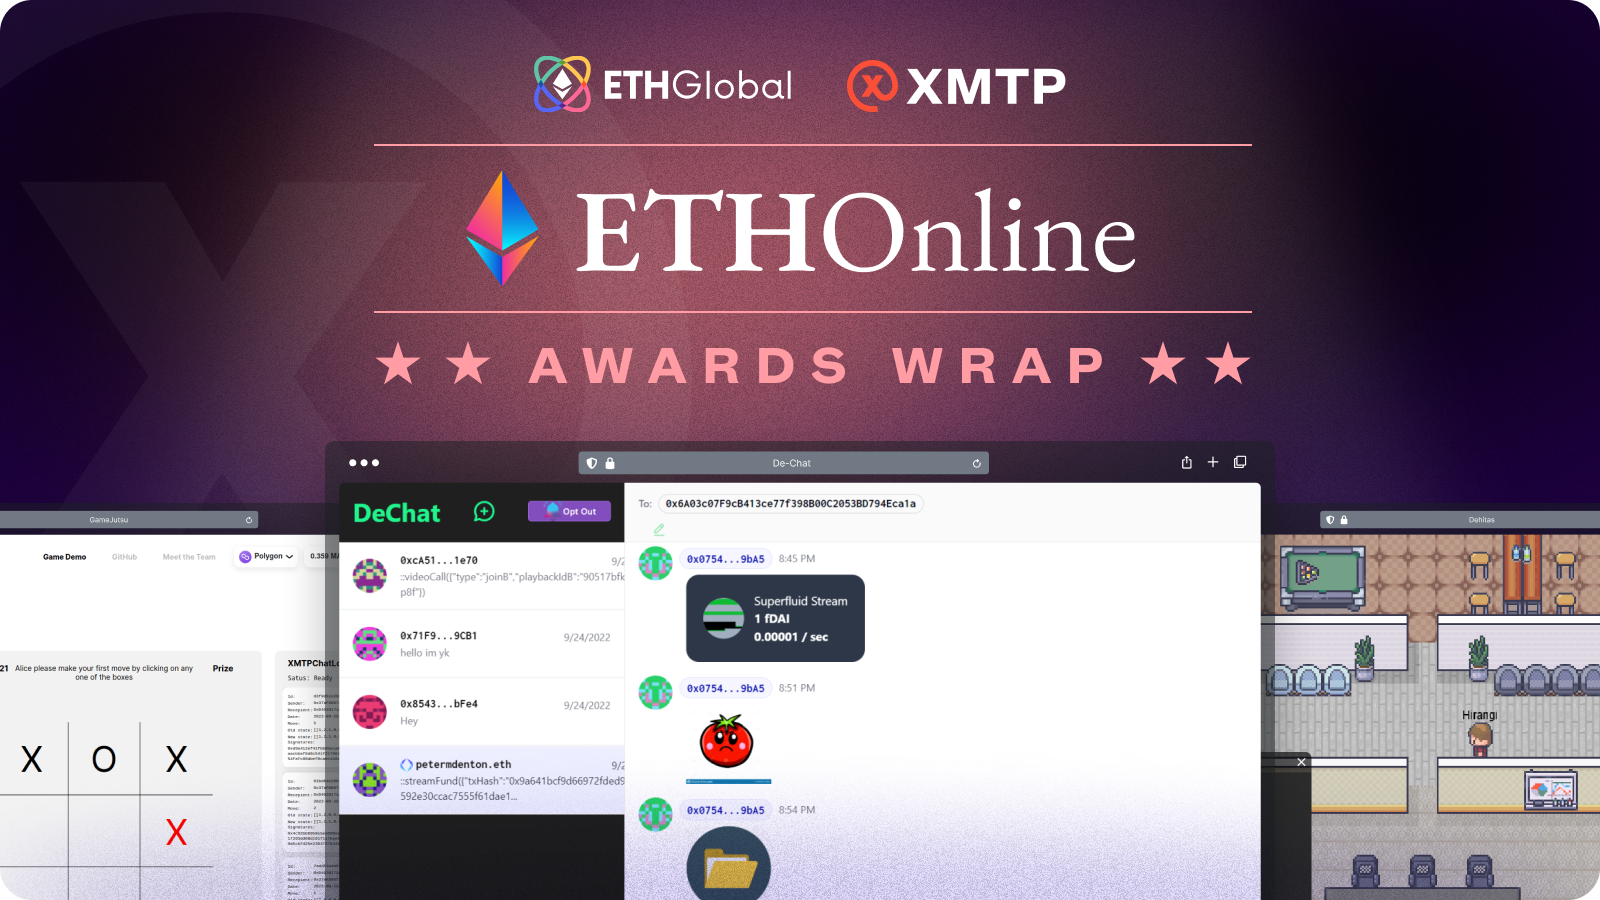 ETHOnline awards wrap card